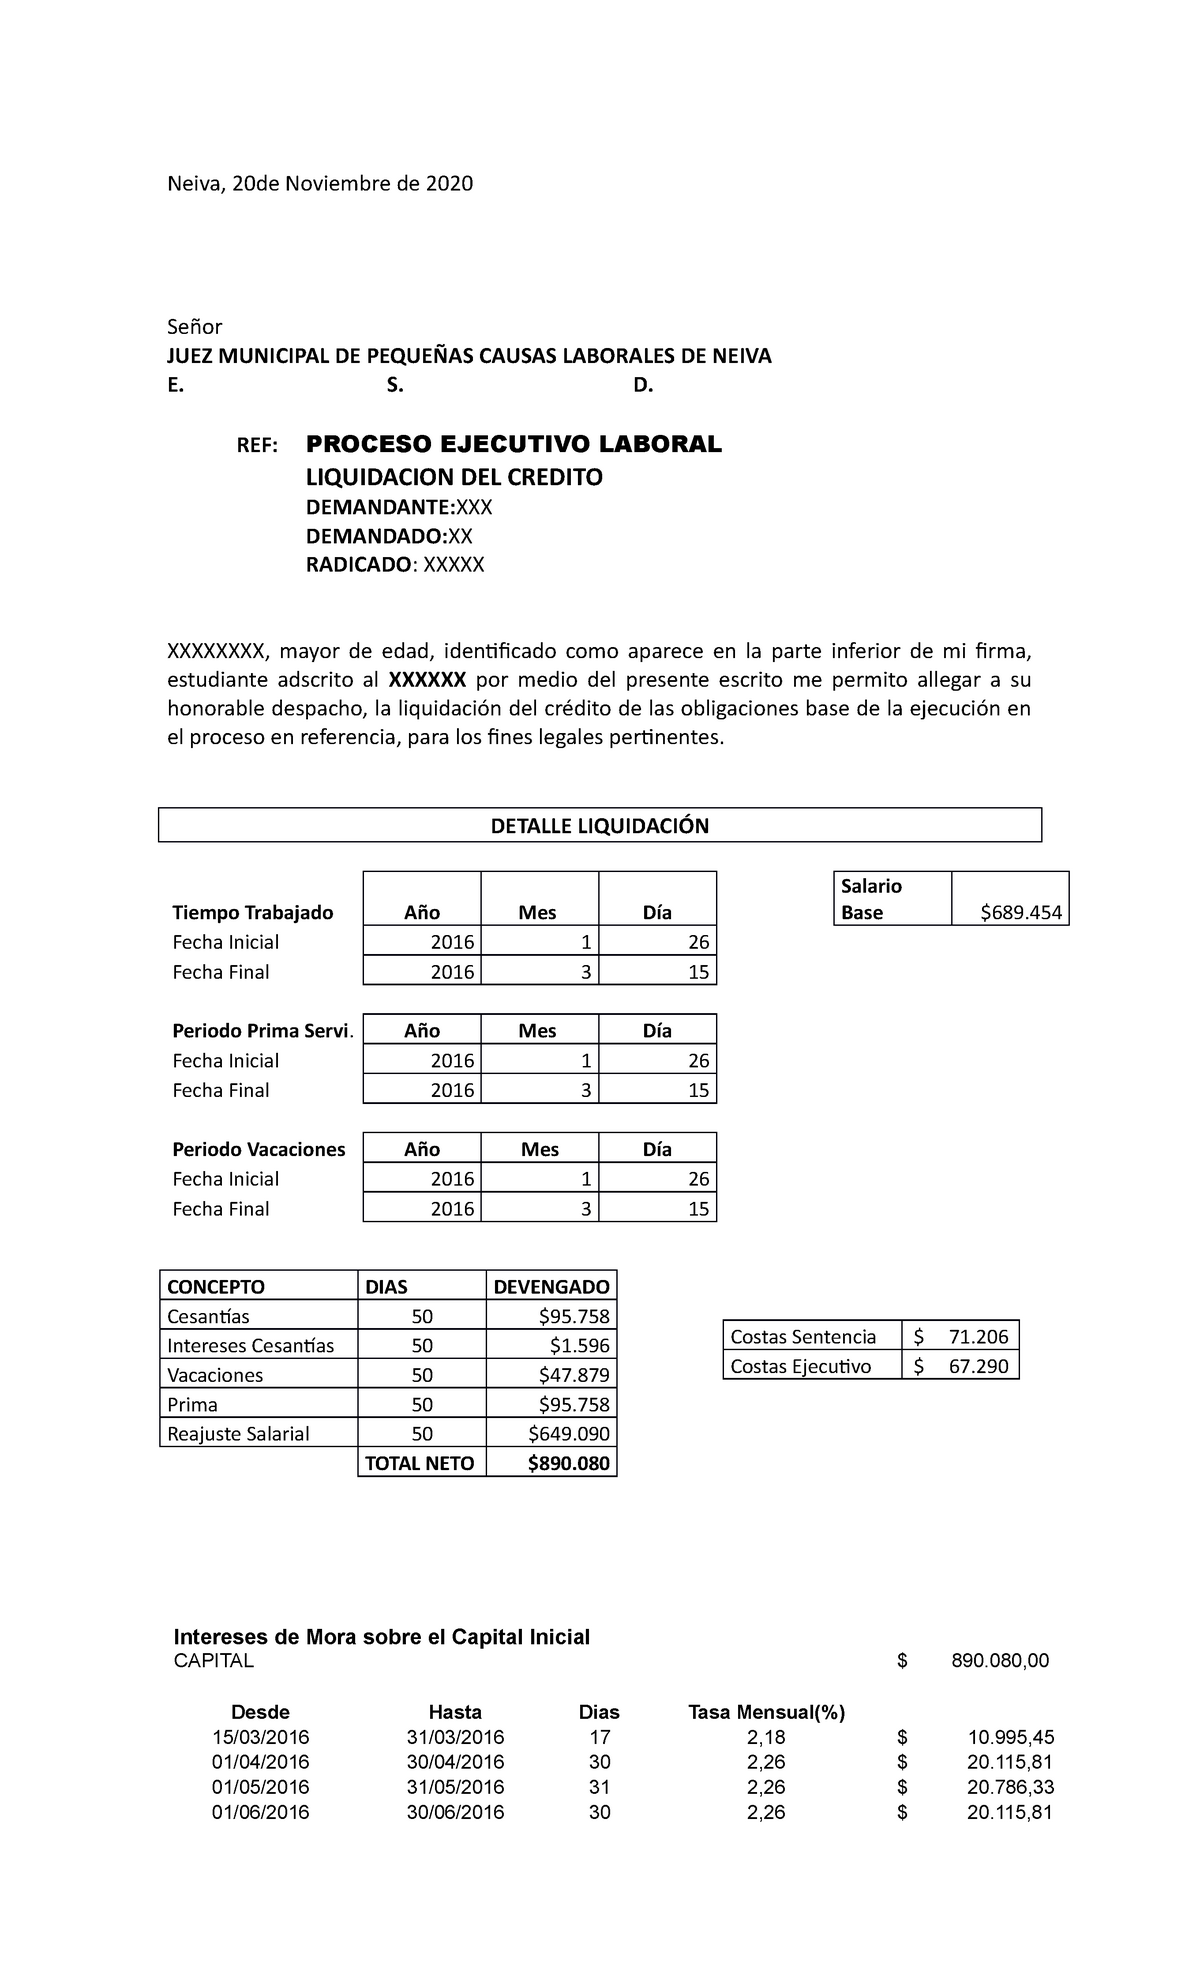 Modelo Liquidacion DE Credito - Ejecutivo Laboral - Neiva, 20de Noviembre  de 2020 Señor JUEZ - Studocu